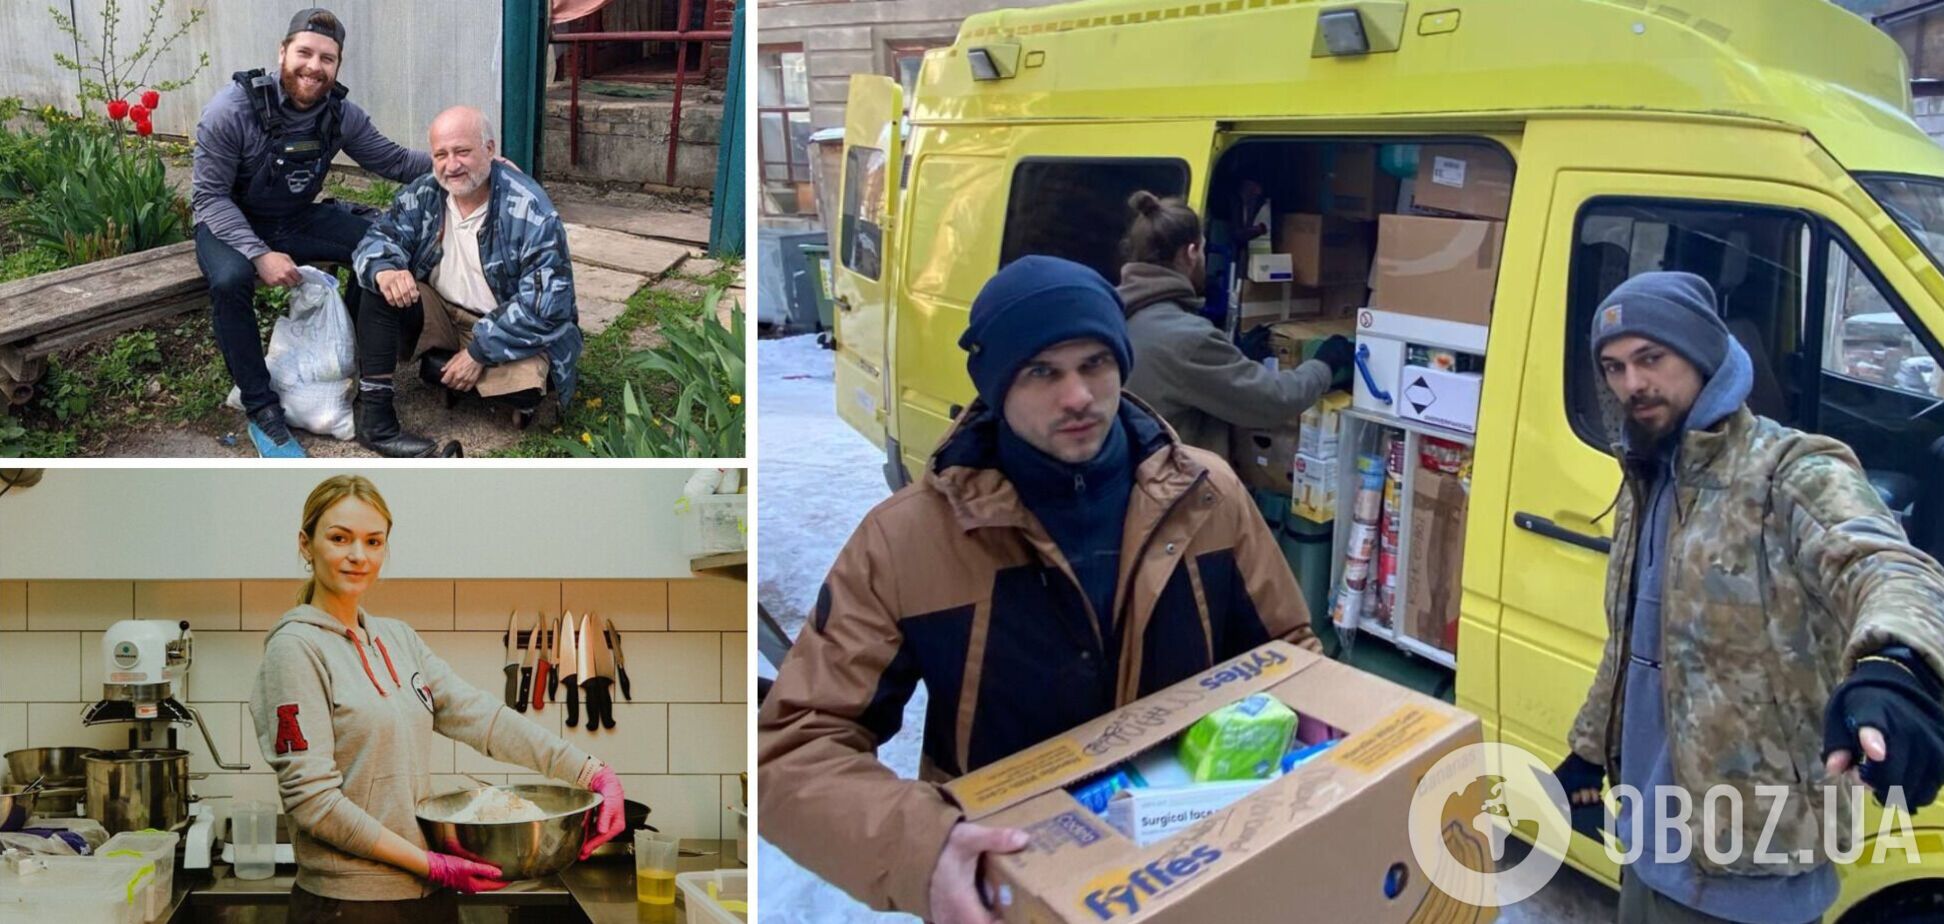 Как бывшие рестораторы, айтишники, СММщики во время войны кормят и спасают украинцев